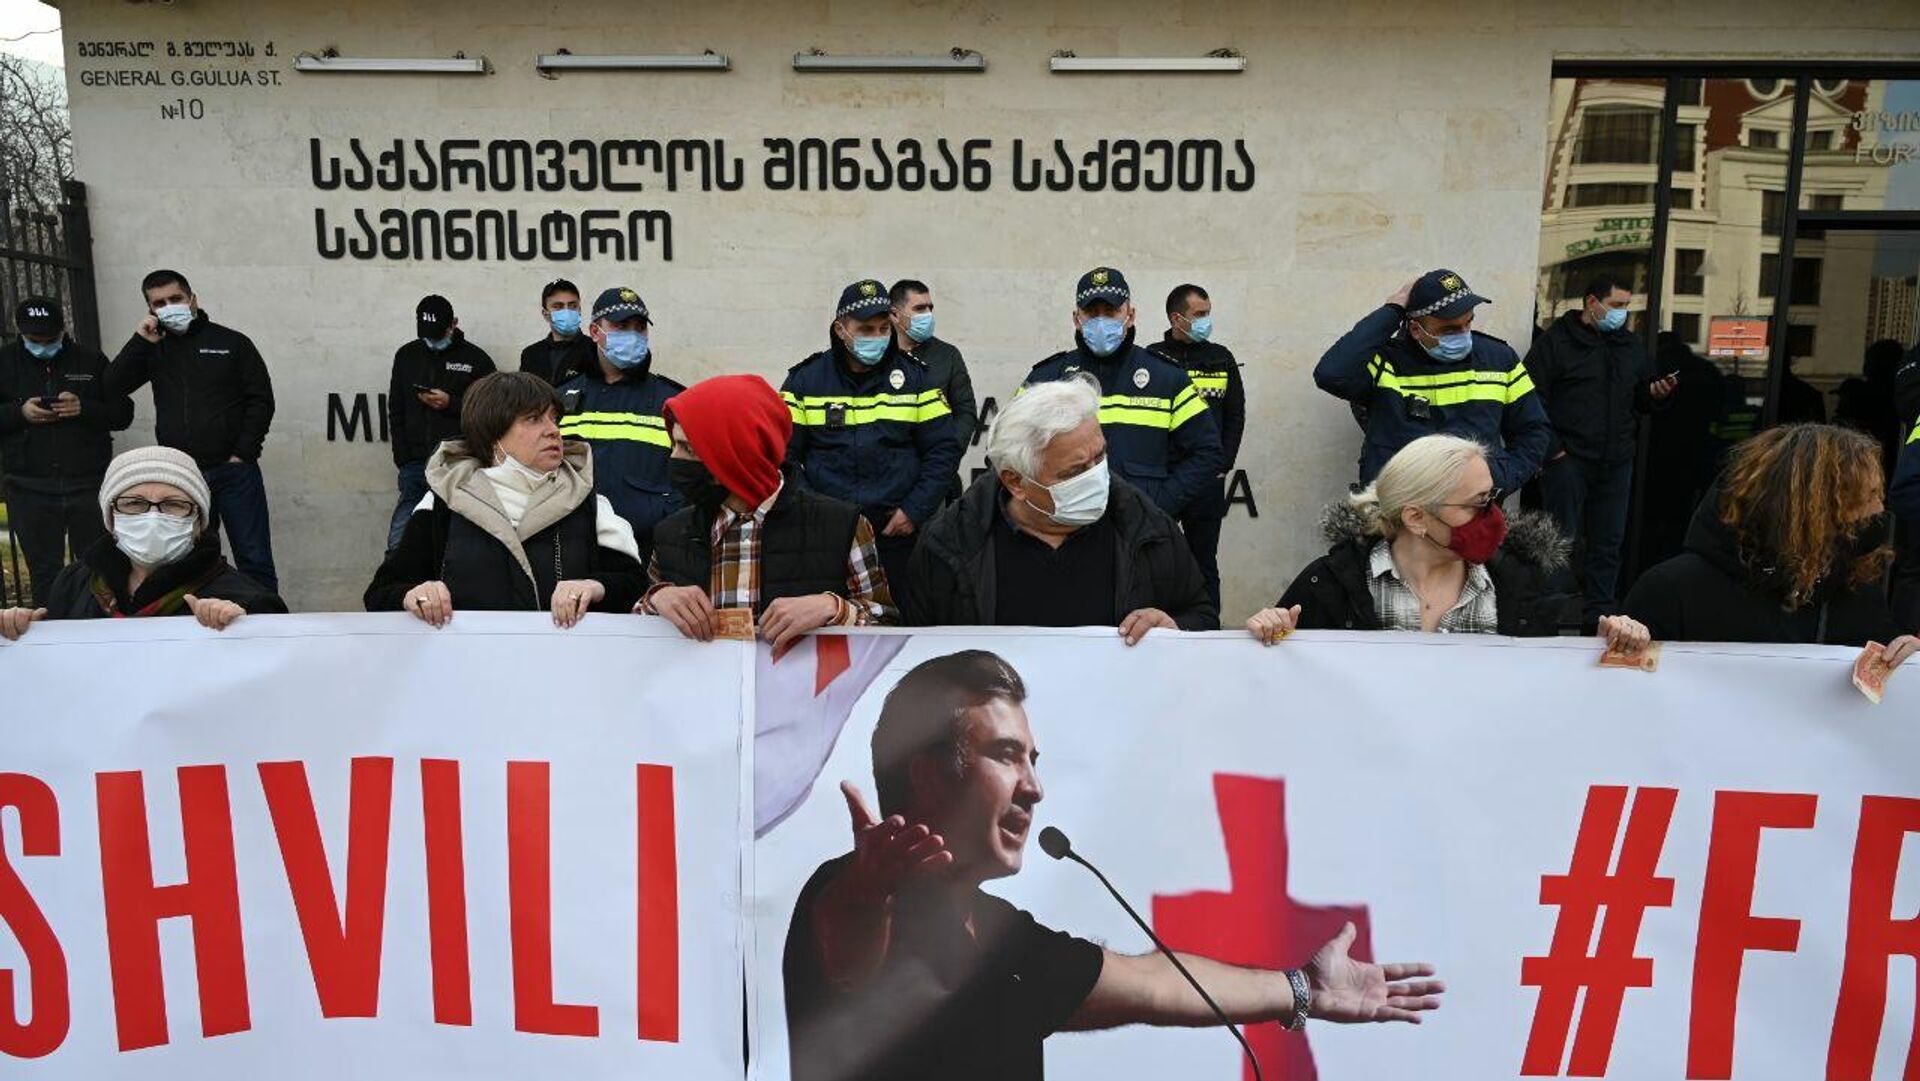 Акция протеста сторонников Саакашвили у здания МВД в Ортачала 18 декабря 2021 года - Sputnik Грузия, 1920, 20.12.2021